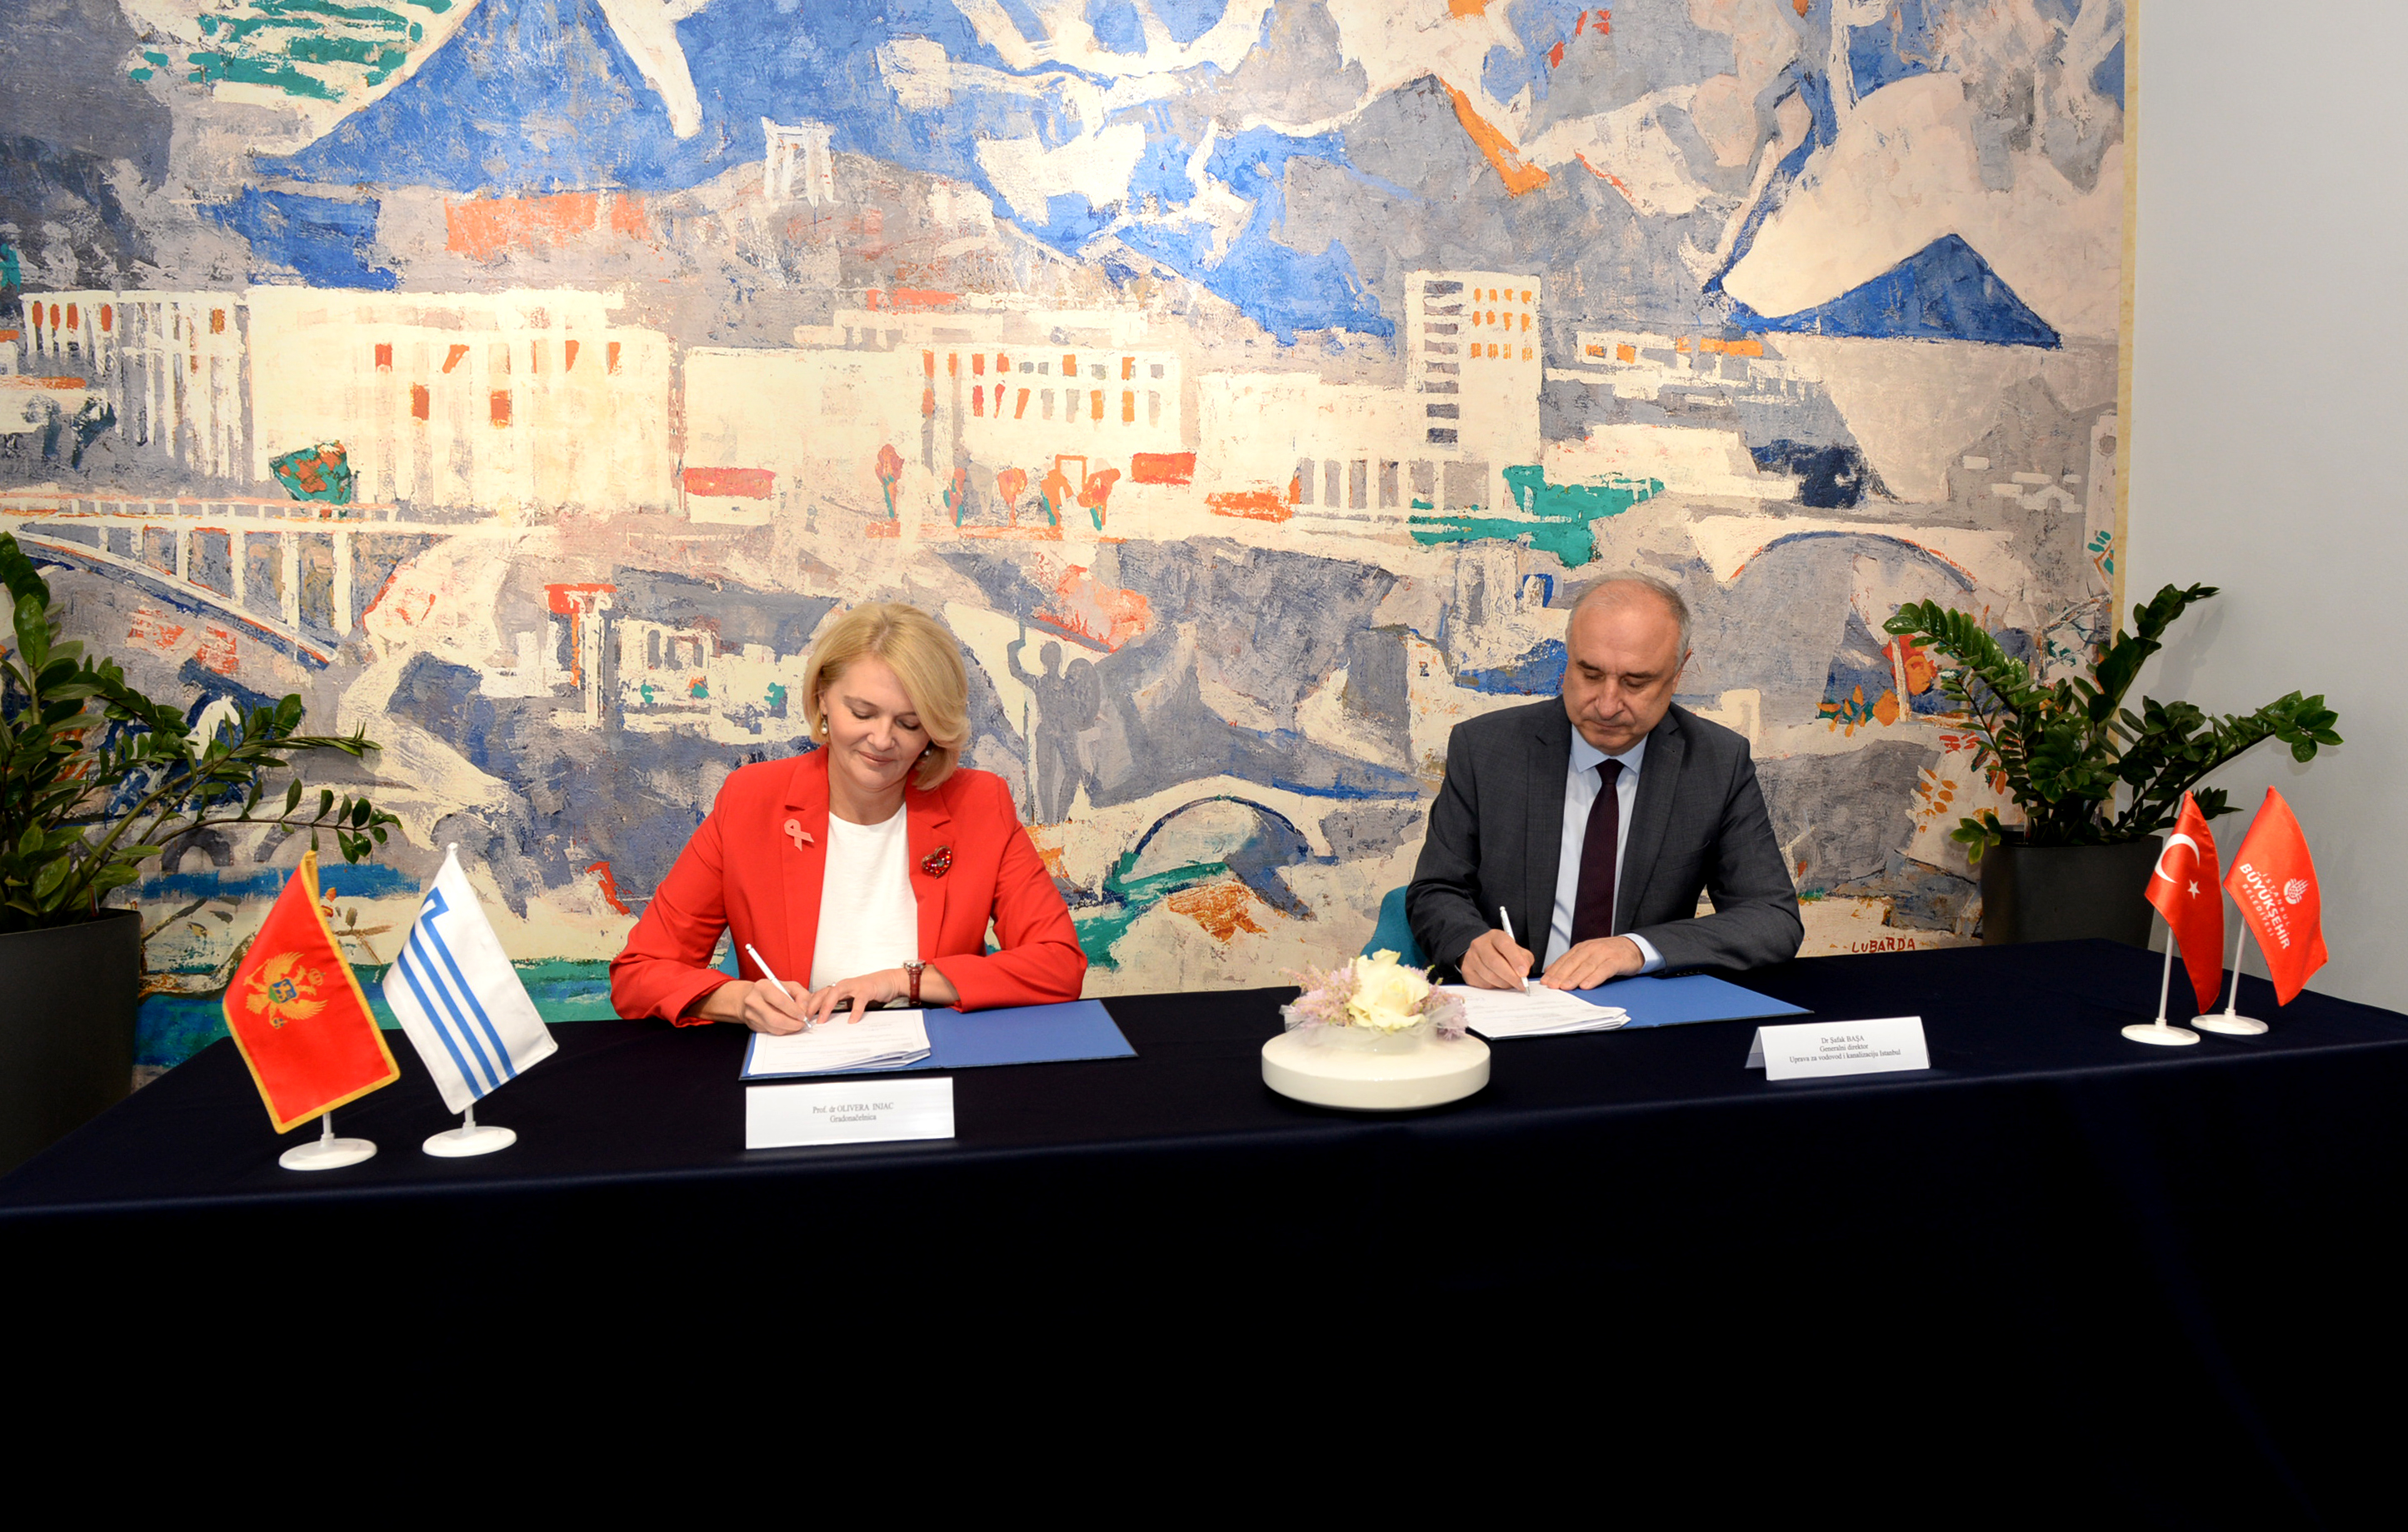 Potpisan Memorandum o razumijevanju između Glavnog grada i Uprave za vodovod Grada Istanbula